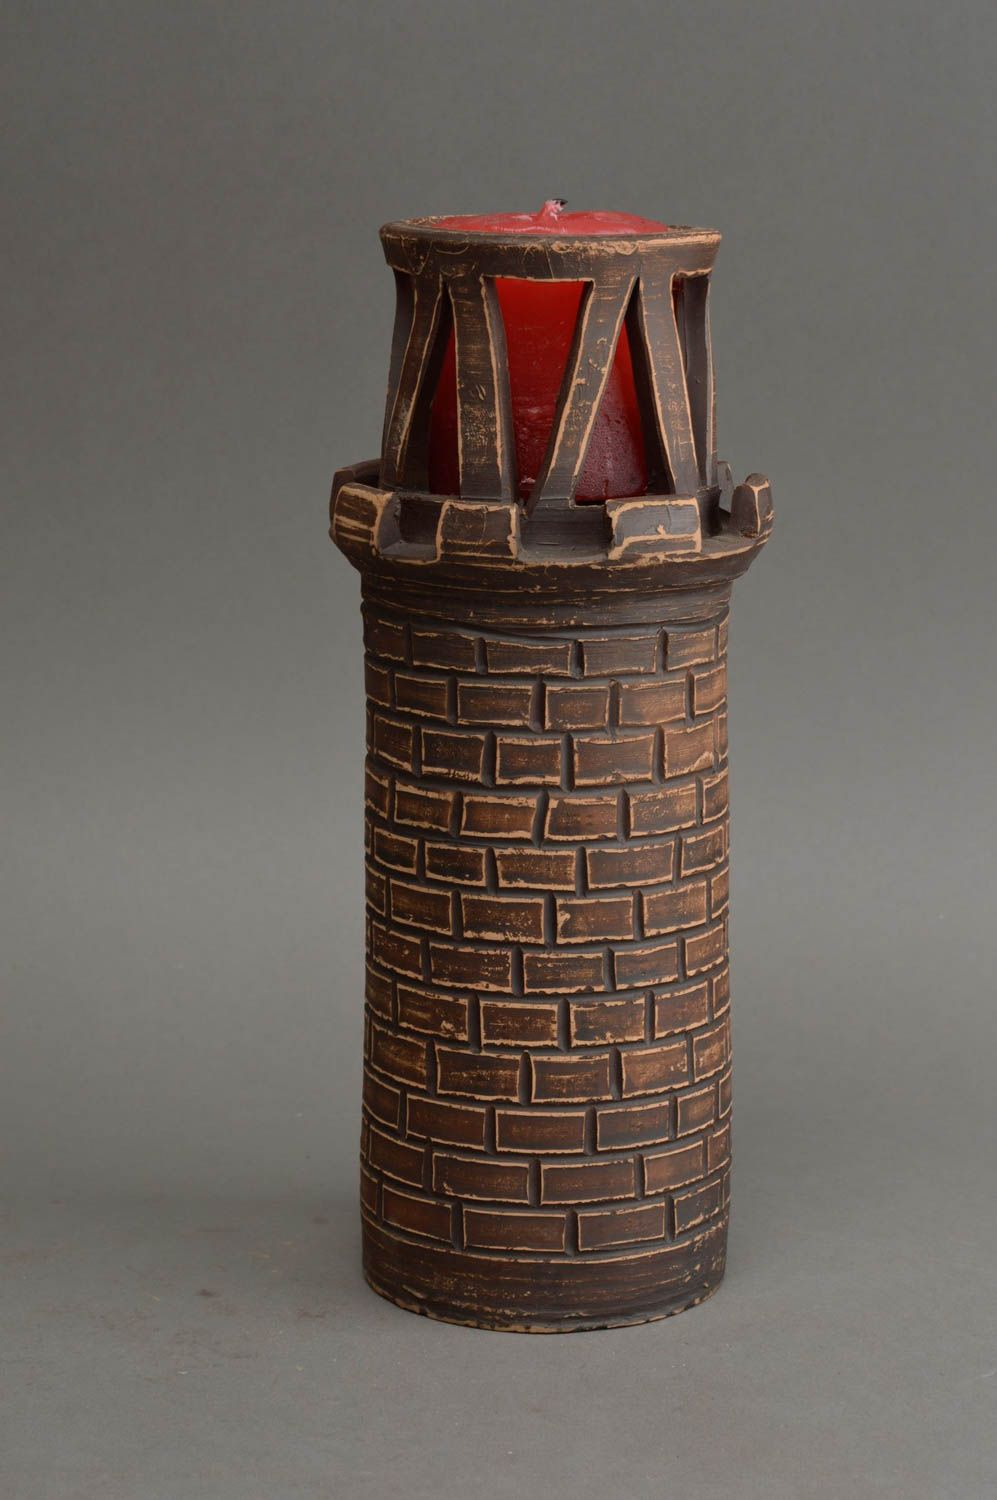 Керамический подсвечник в виде башни с оградкой из красной глины ручной работы фото 1